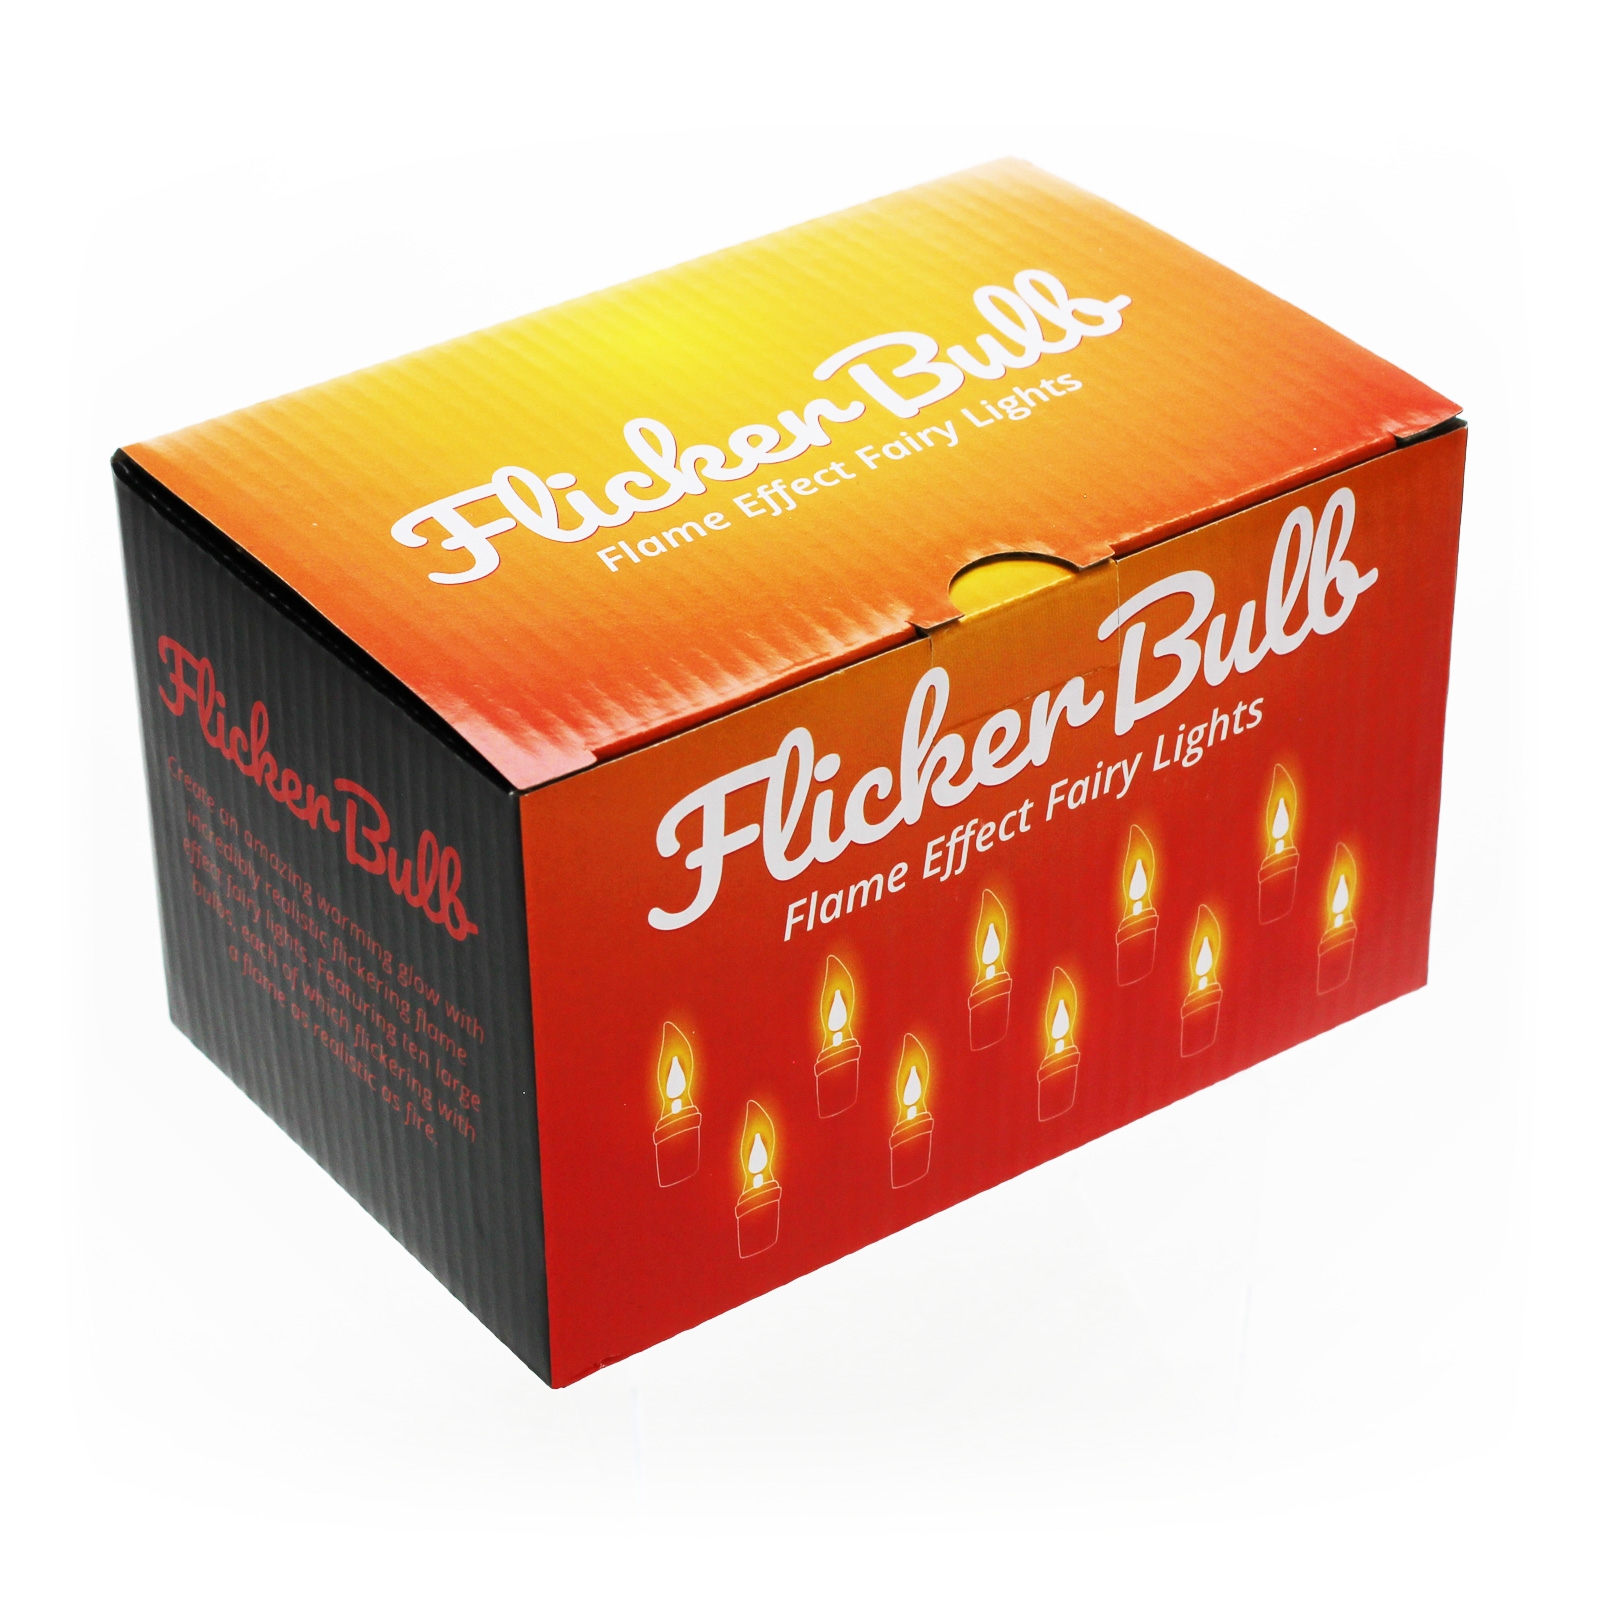 Flicker Bulb Stringlights box